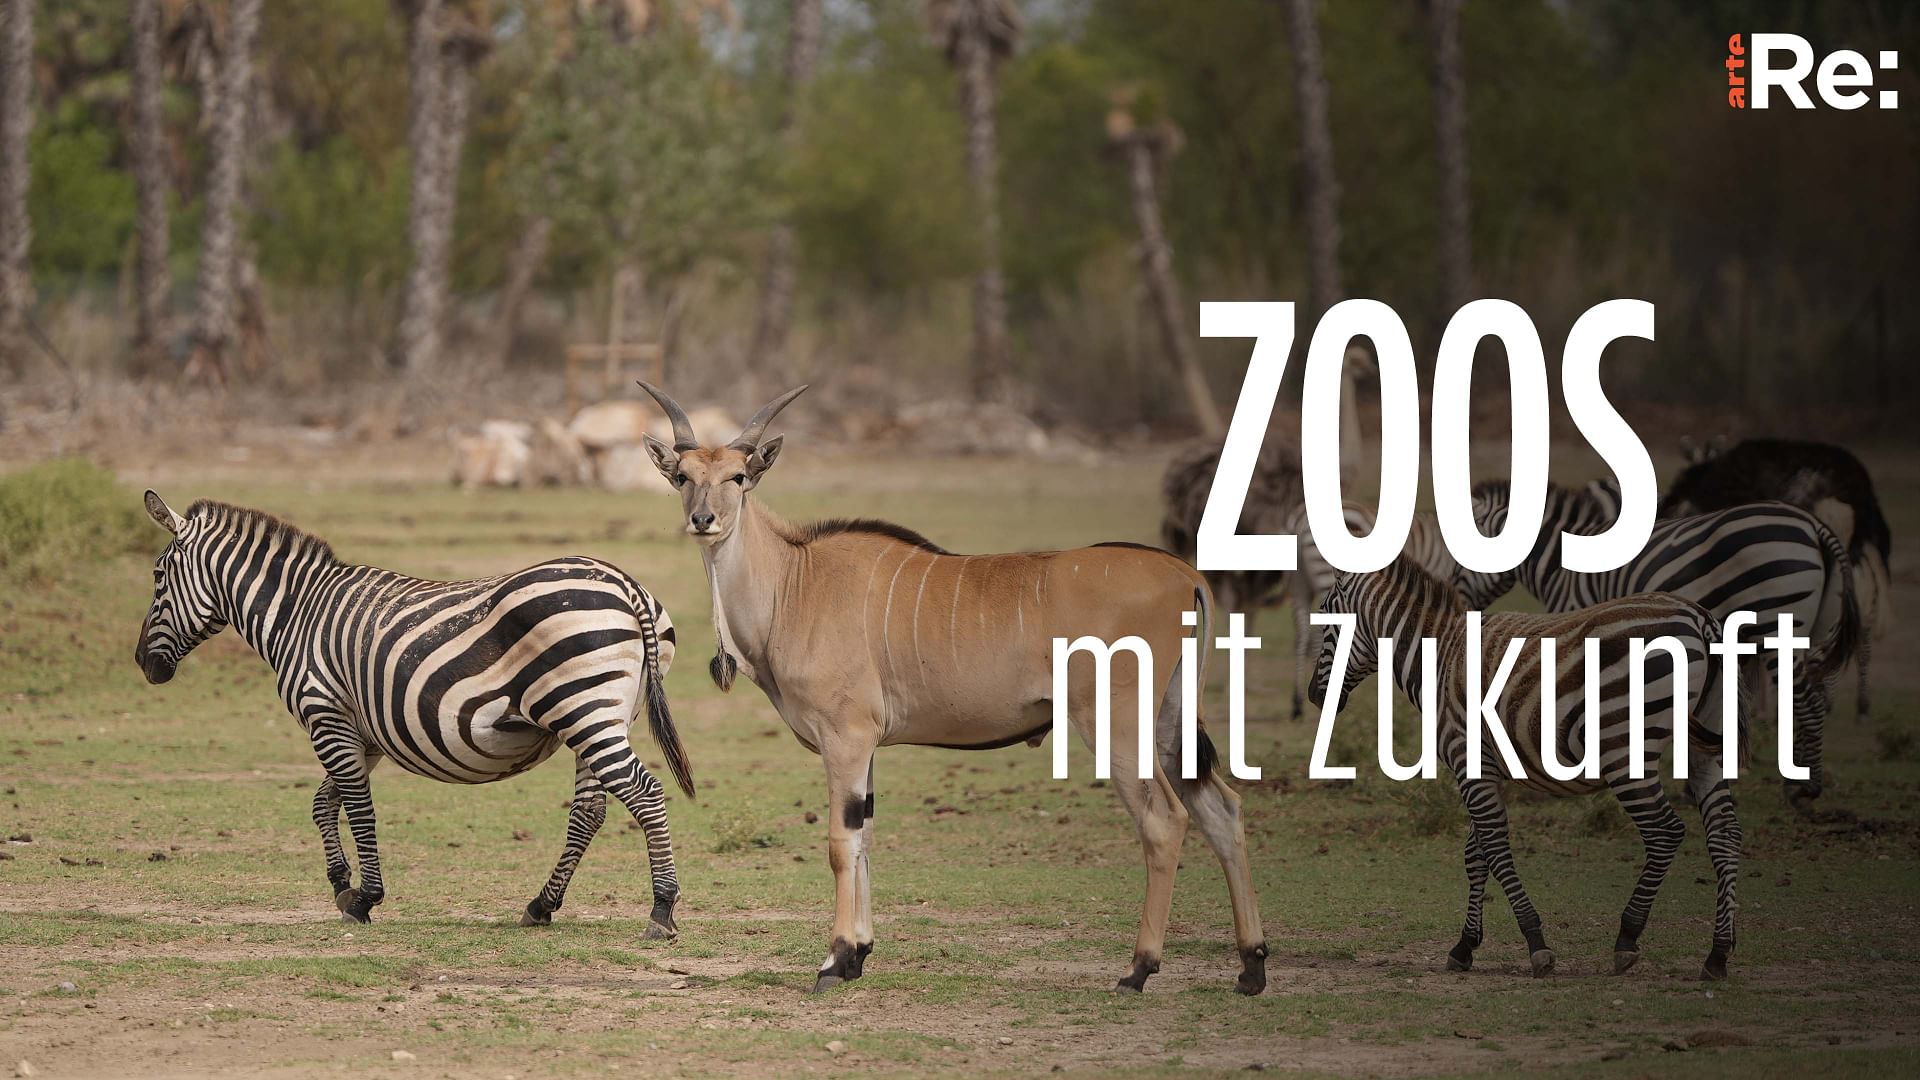 Re: Zoos mit Zukunft - Mehr Wildnis wagen